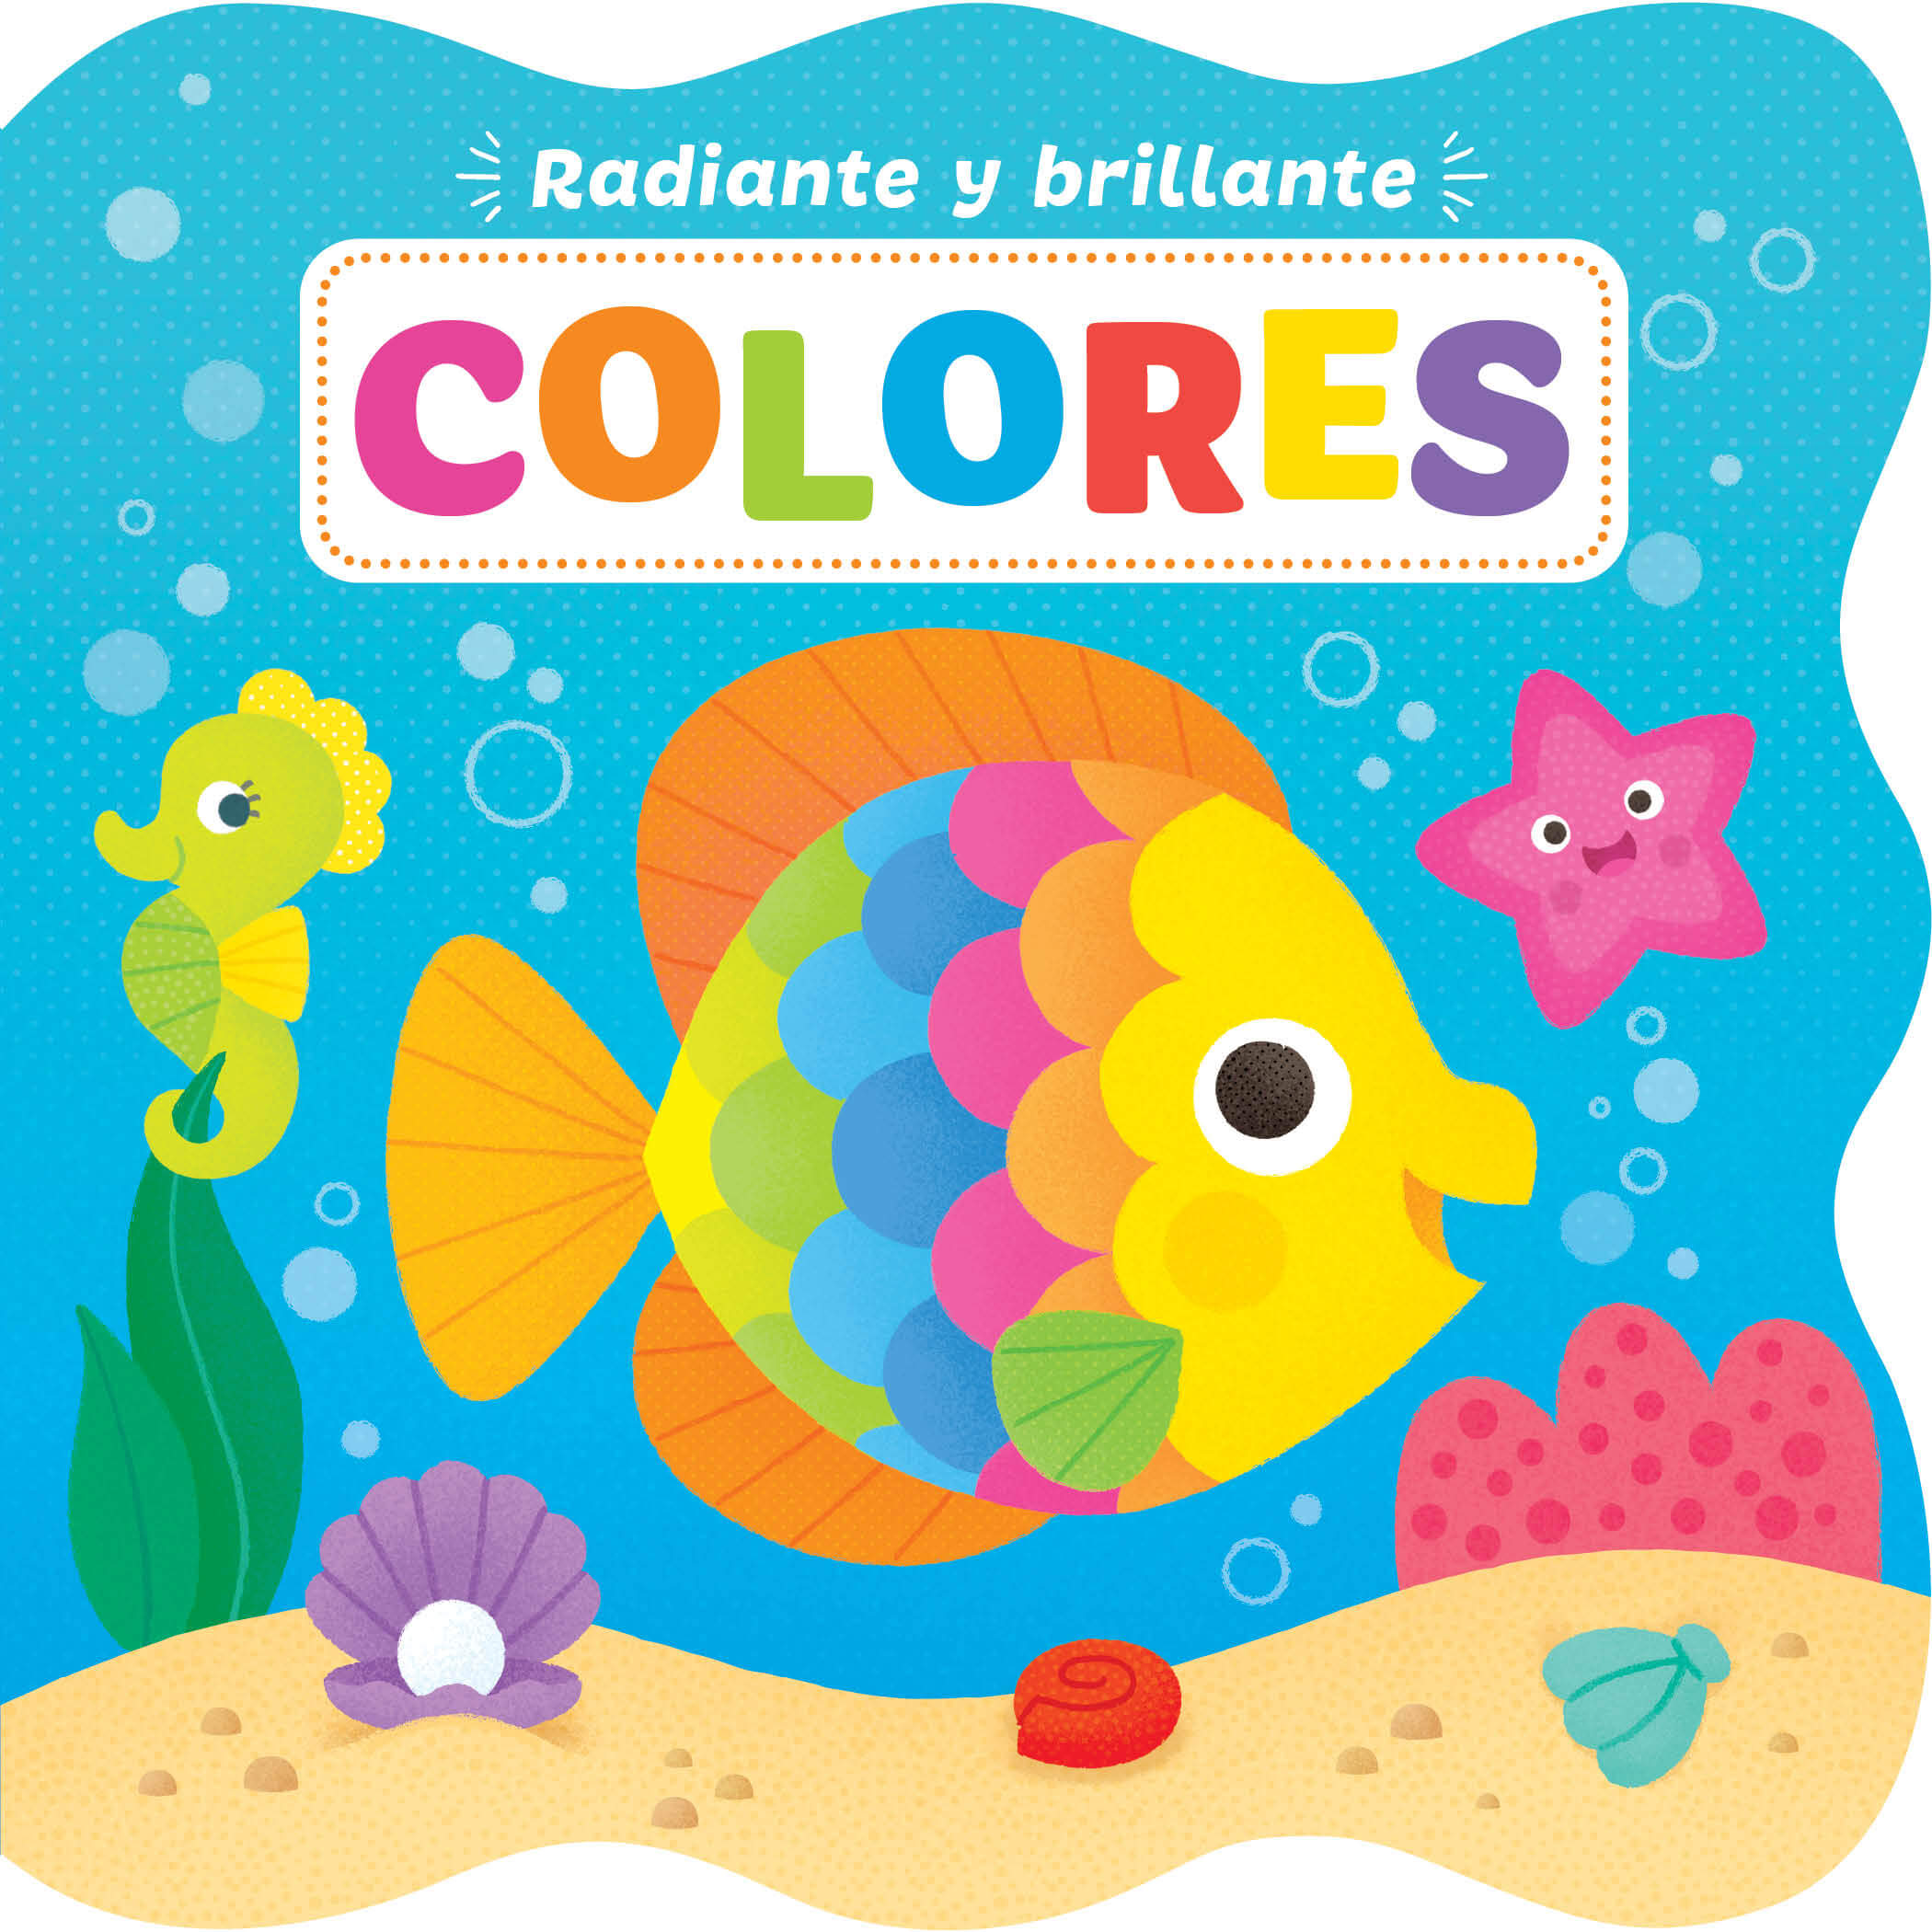 Radiante y brillante: Colores